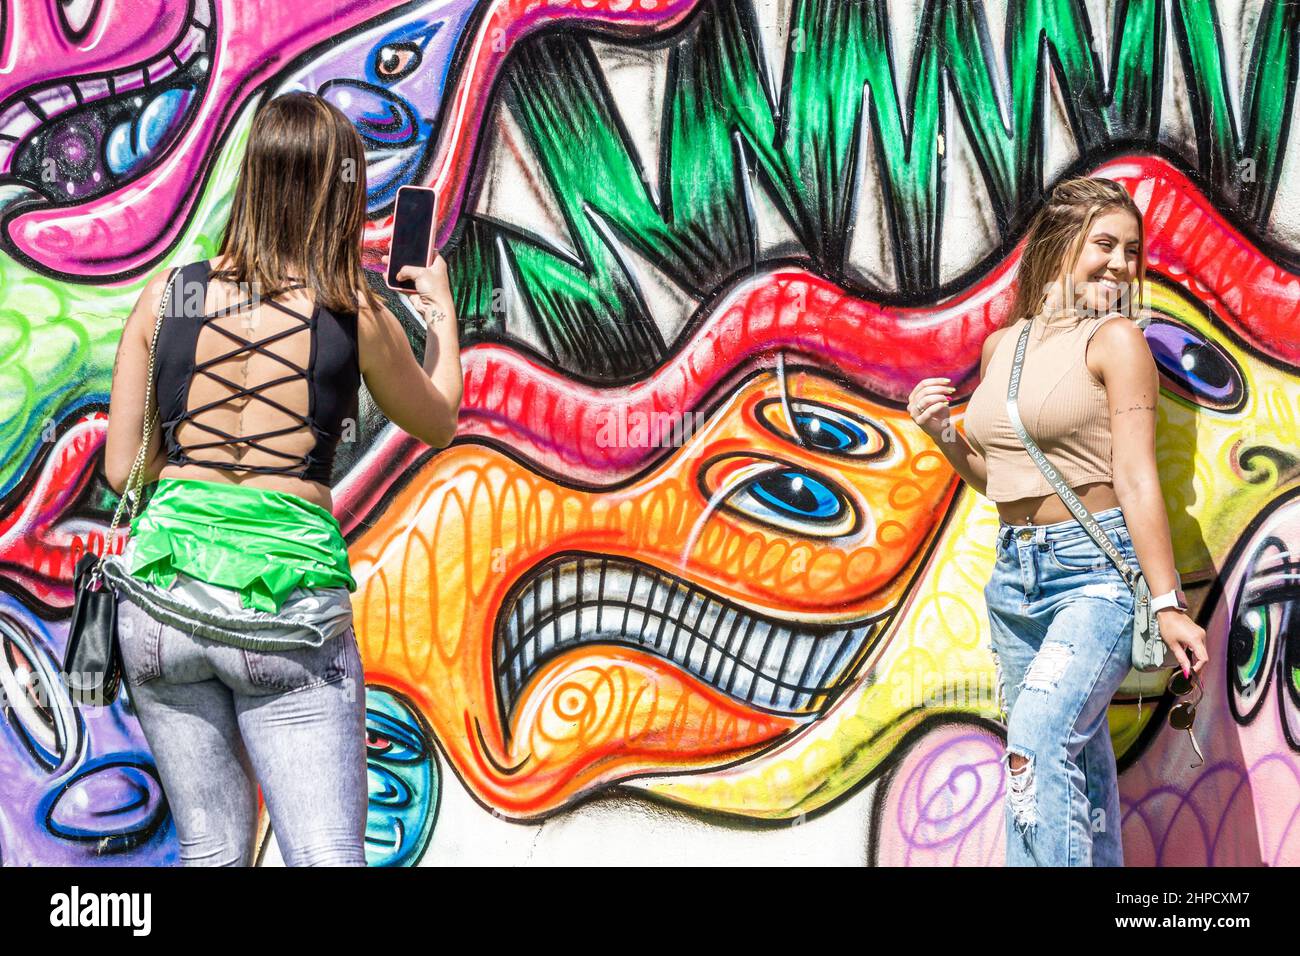 Miami Florida Wynwood Art District art mur visiteurs femmes amis posant adolescent adolescents filles fille adolescents prendre des photos Banque D'Images